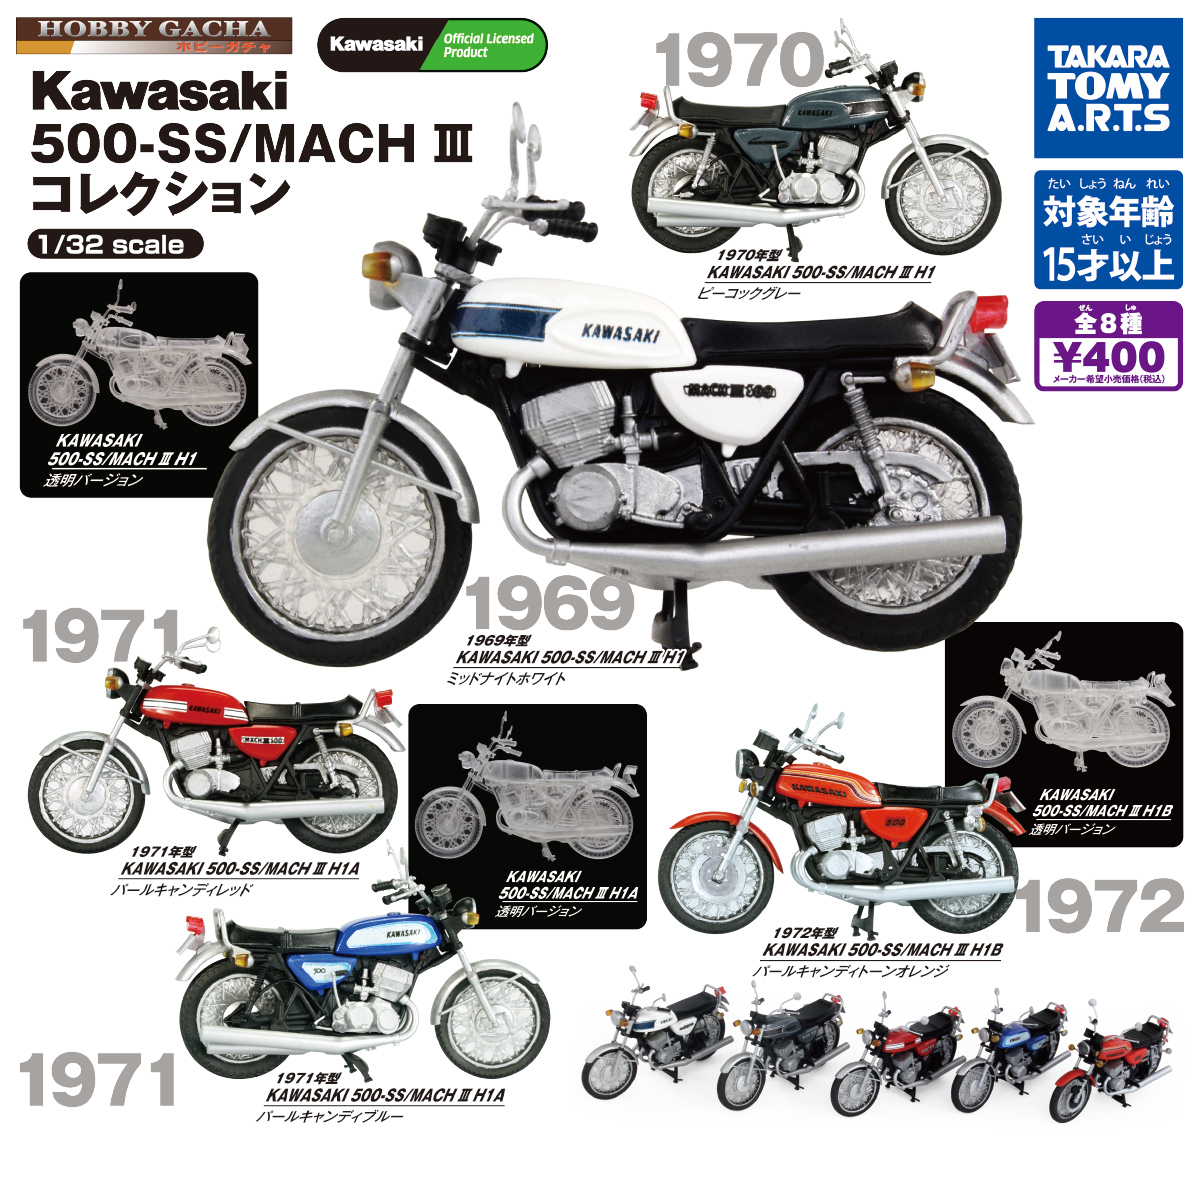 58%OFF!】 Kawasaki 500SS マッハⅢ ミニチュア